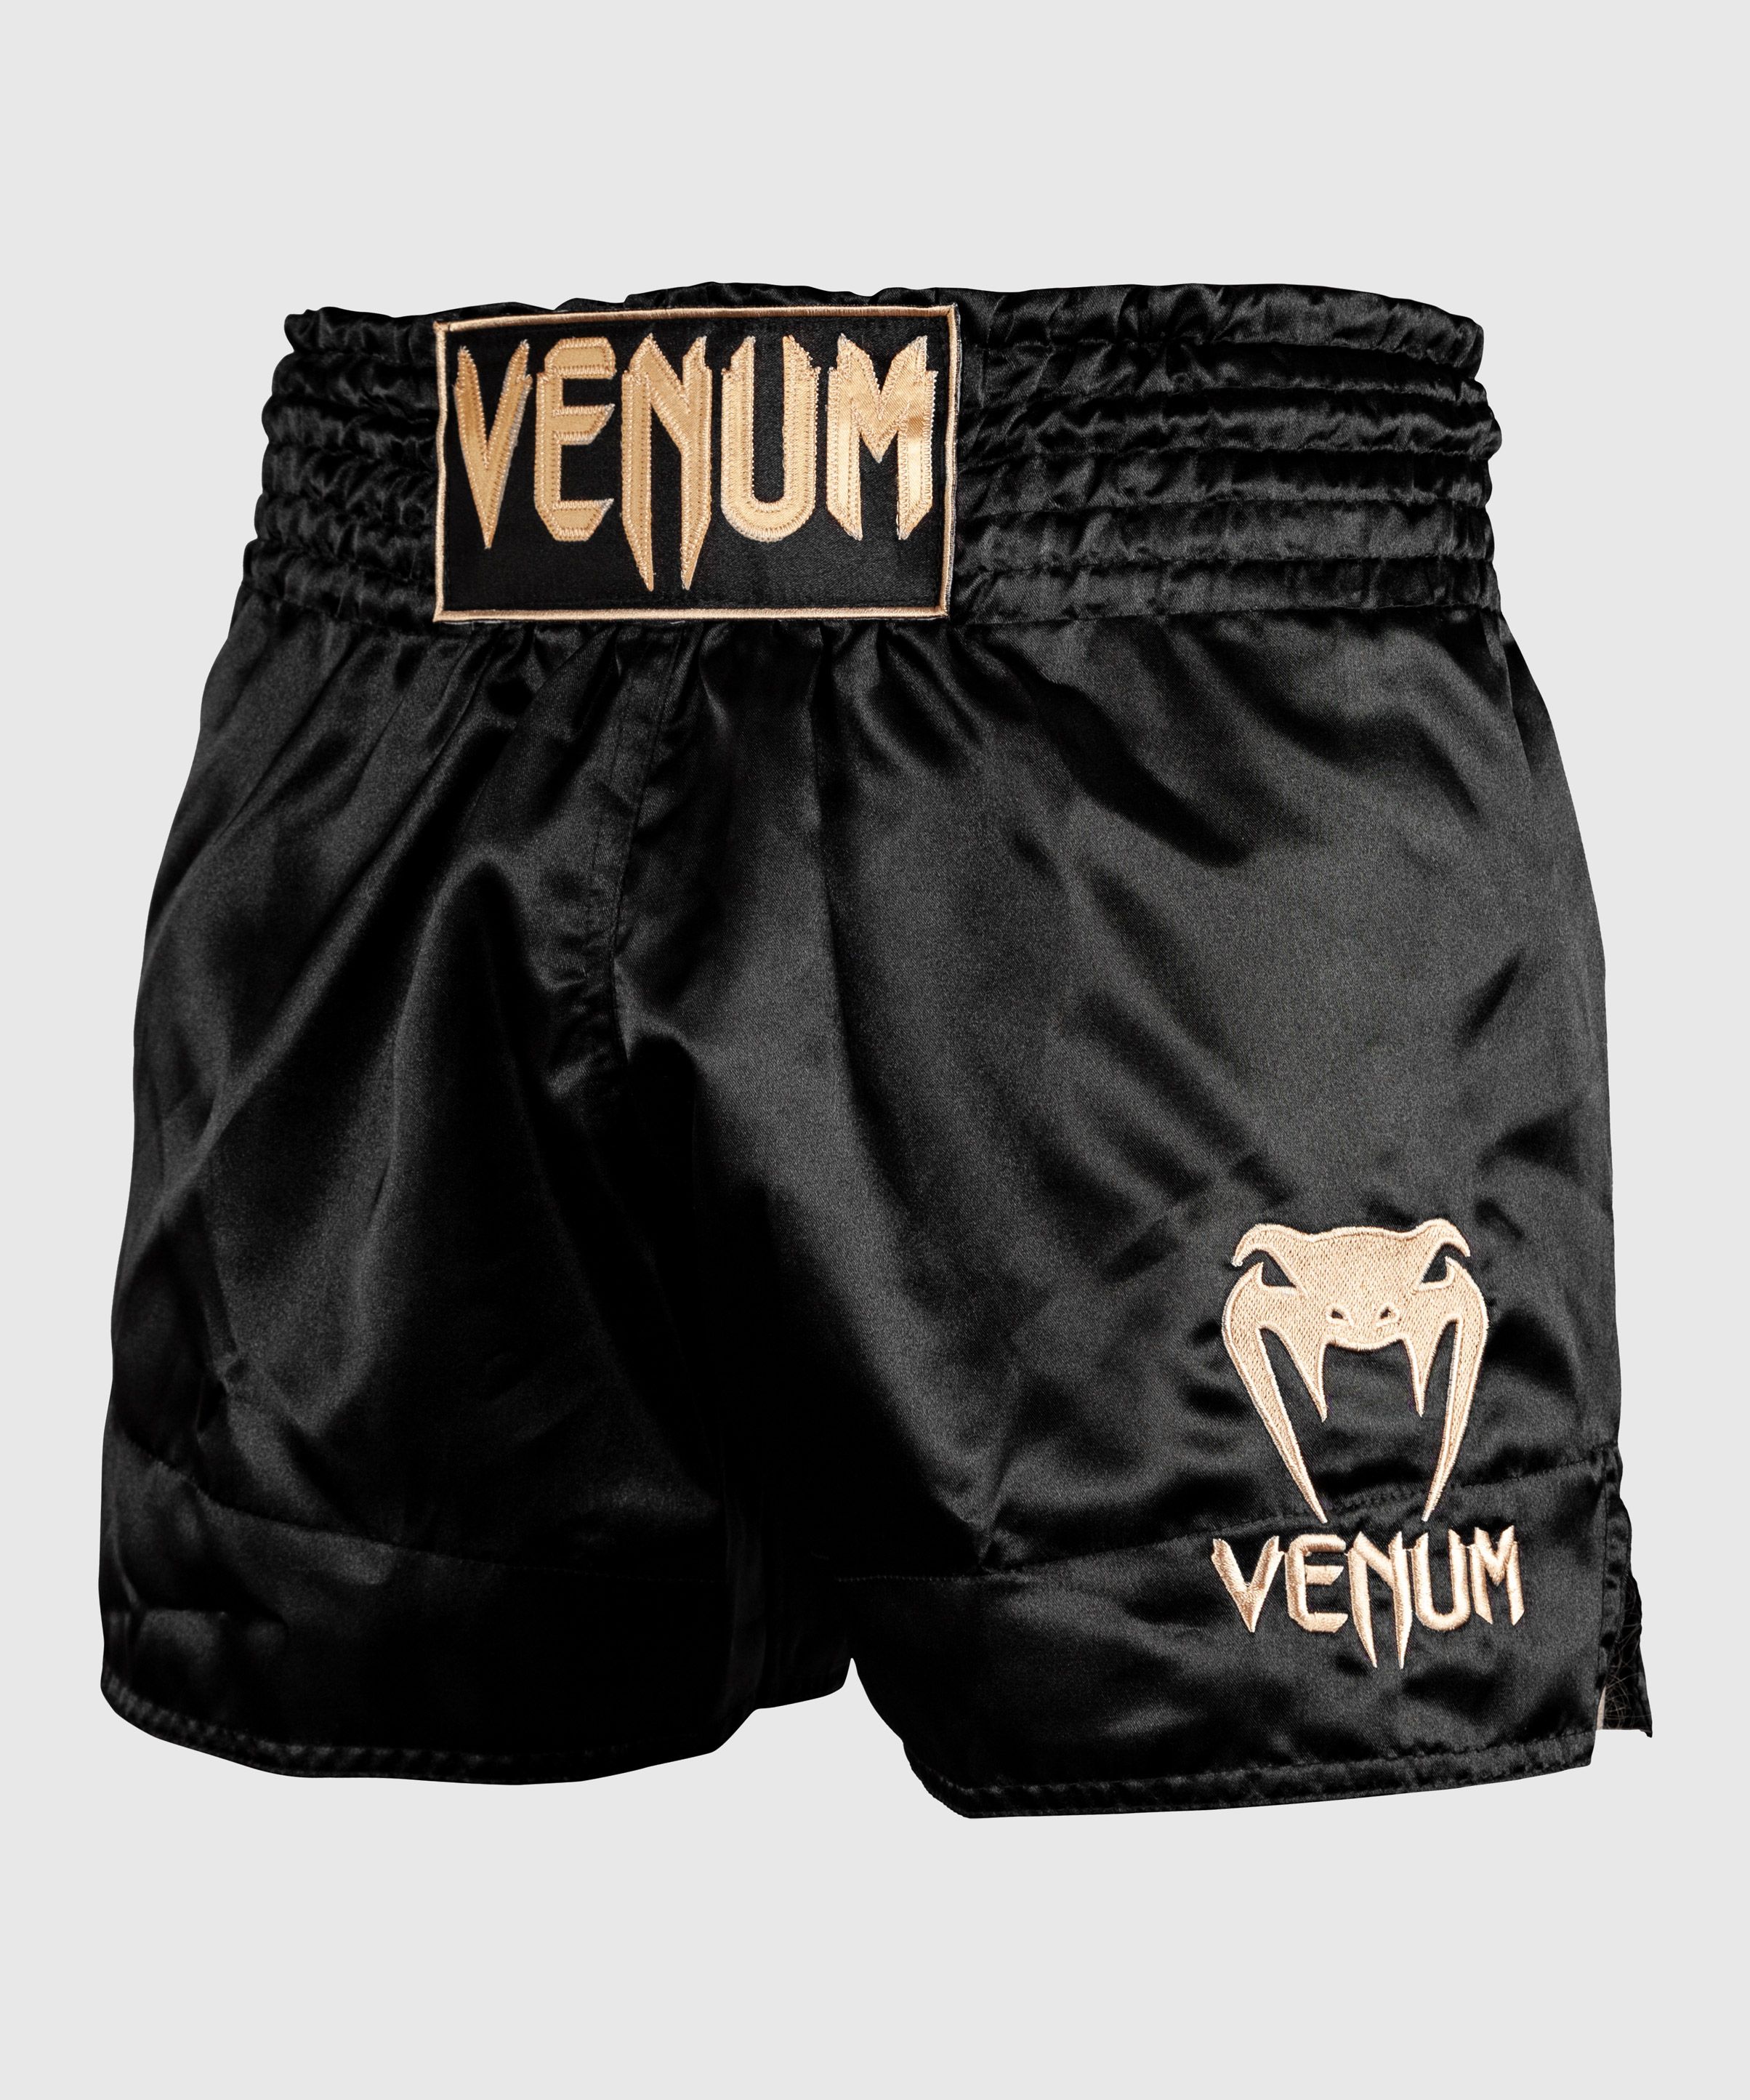 Venum Thai Classic Shorts Black